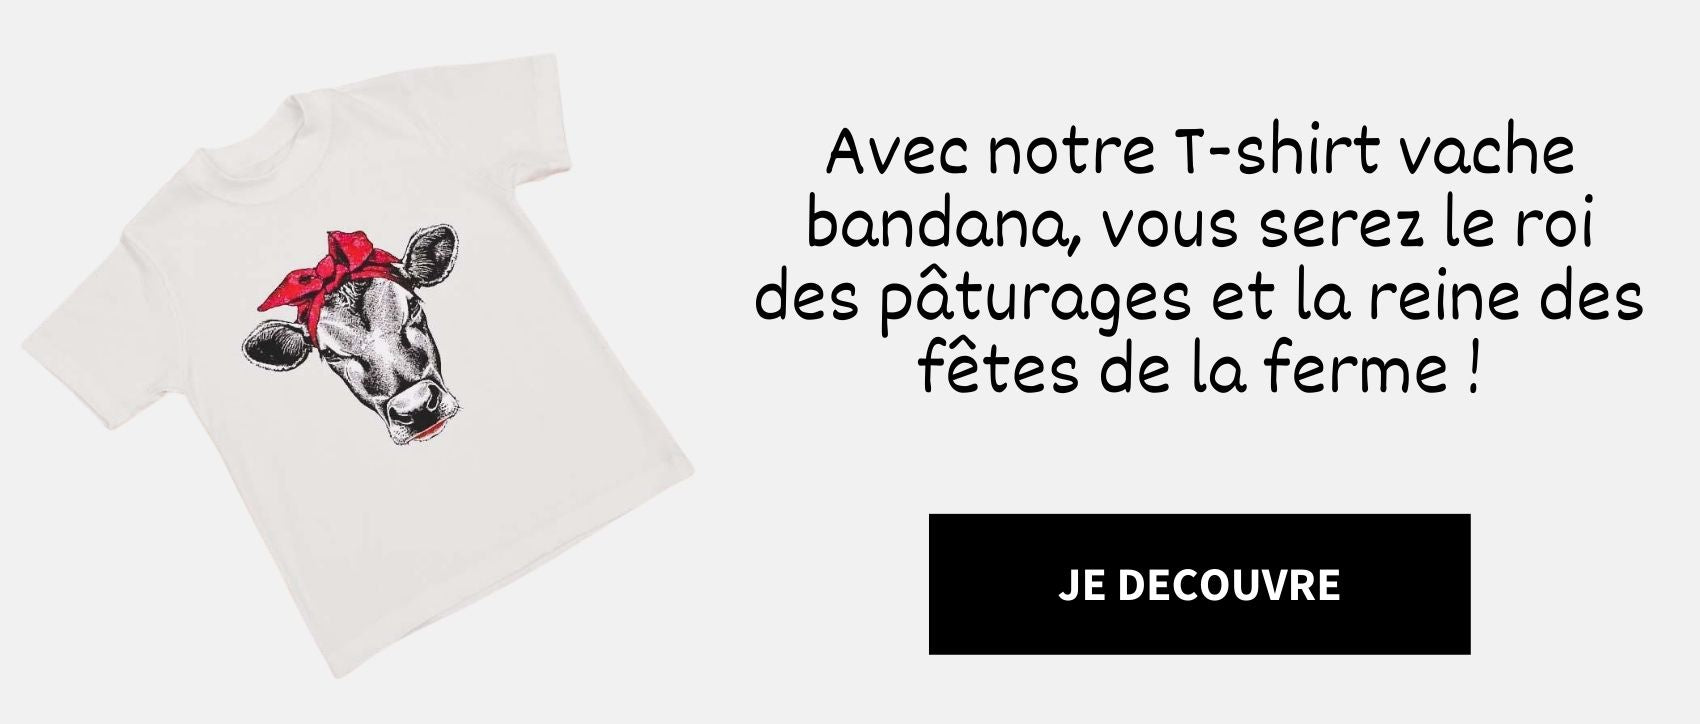 https://le-petit-fermier.com/collections/creations-du-fermier/products/t-shirt-blanc-vache-bandana